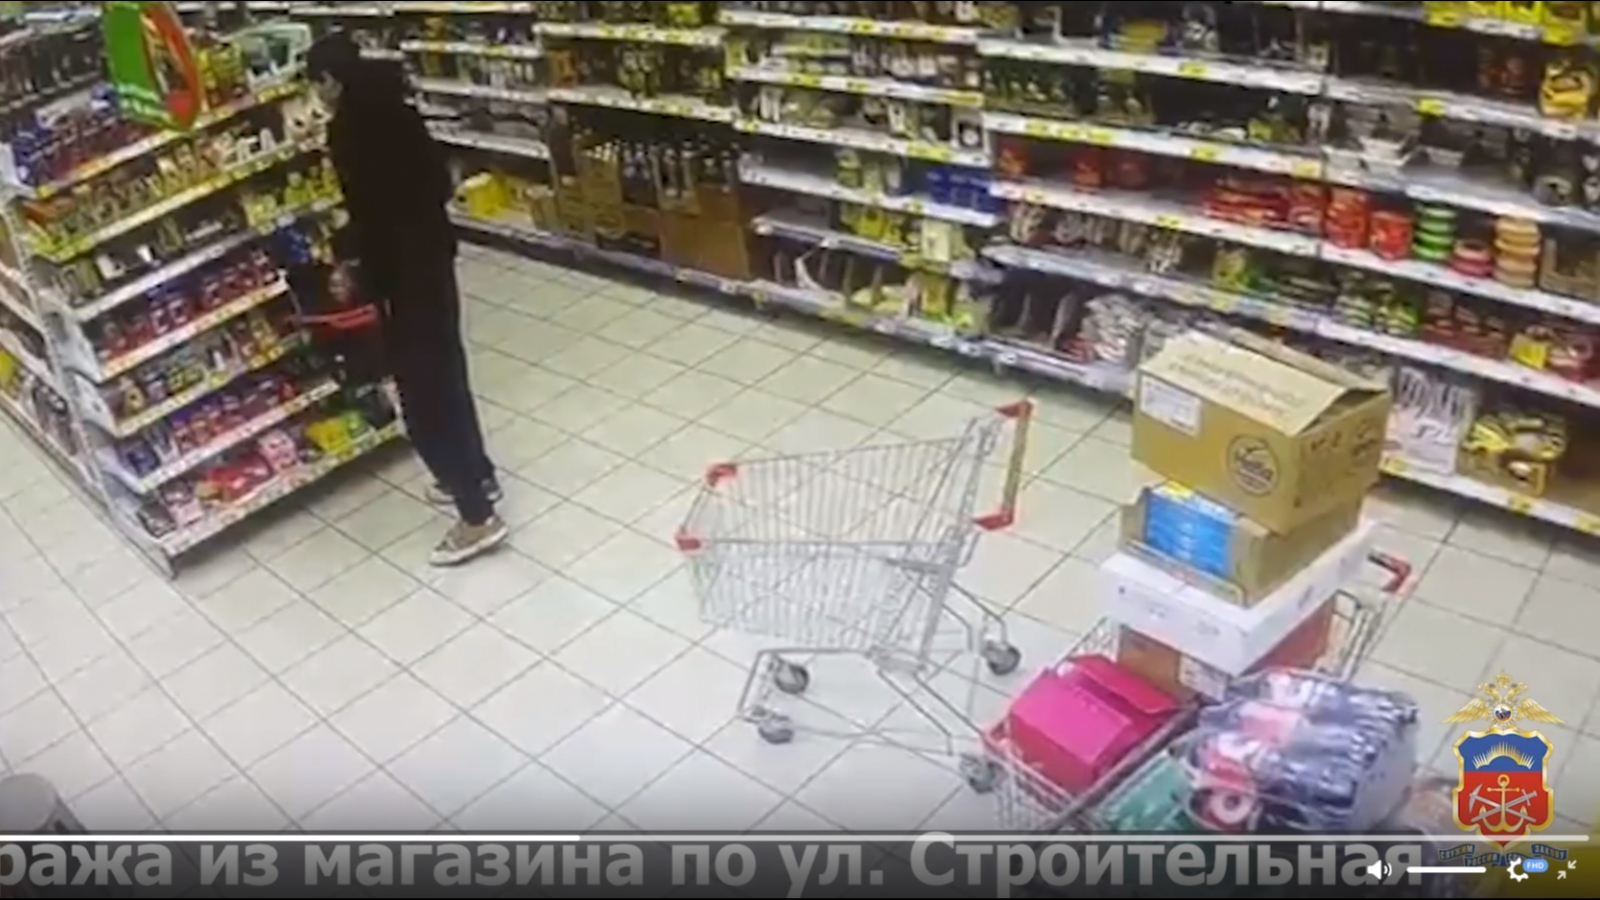 В Оленегорске задержали серийного похитителя продуктов [видео]